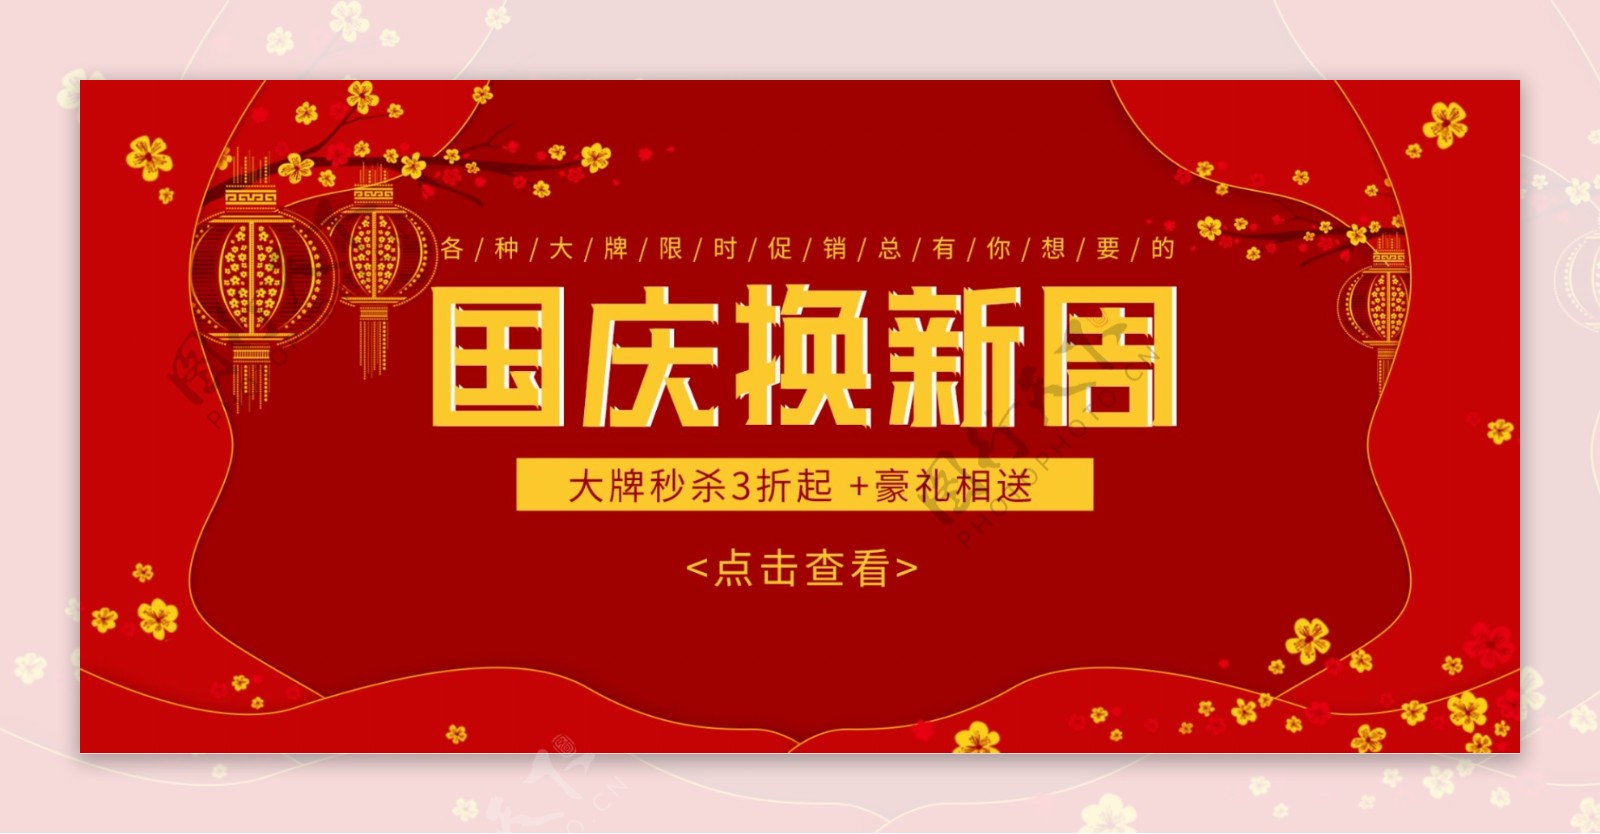 国庆节红色节日促销活动电商banner